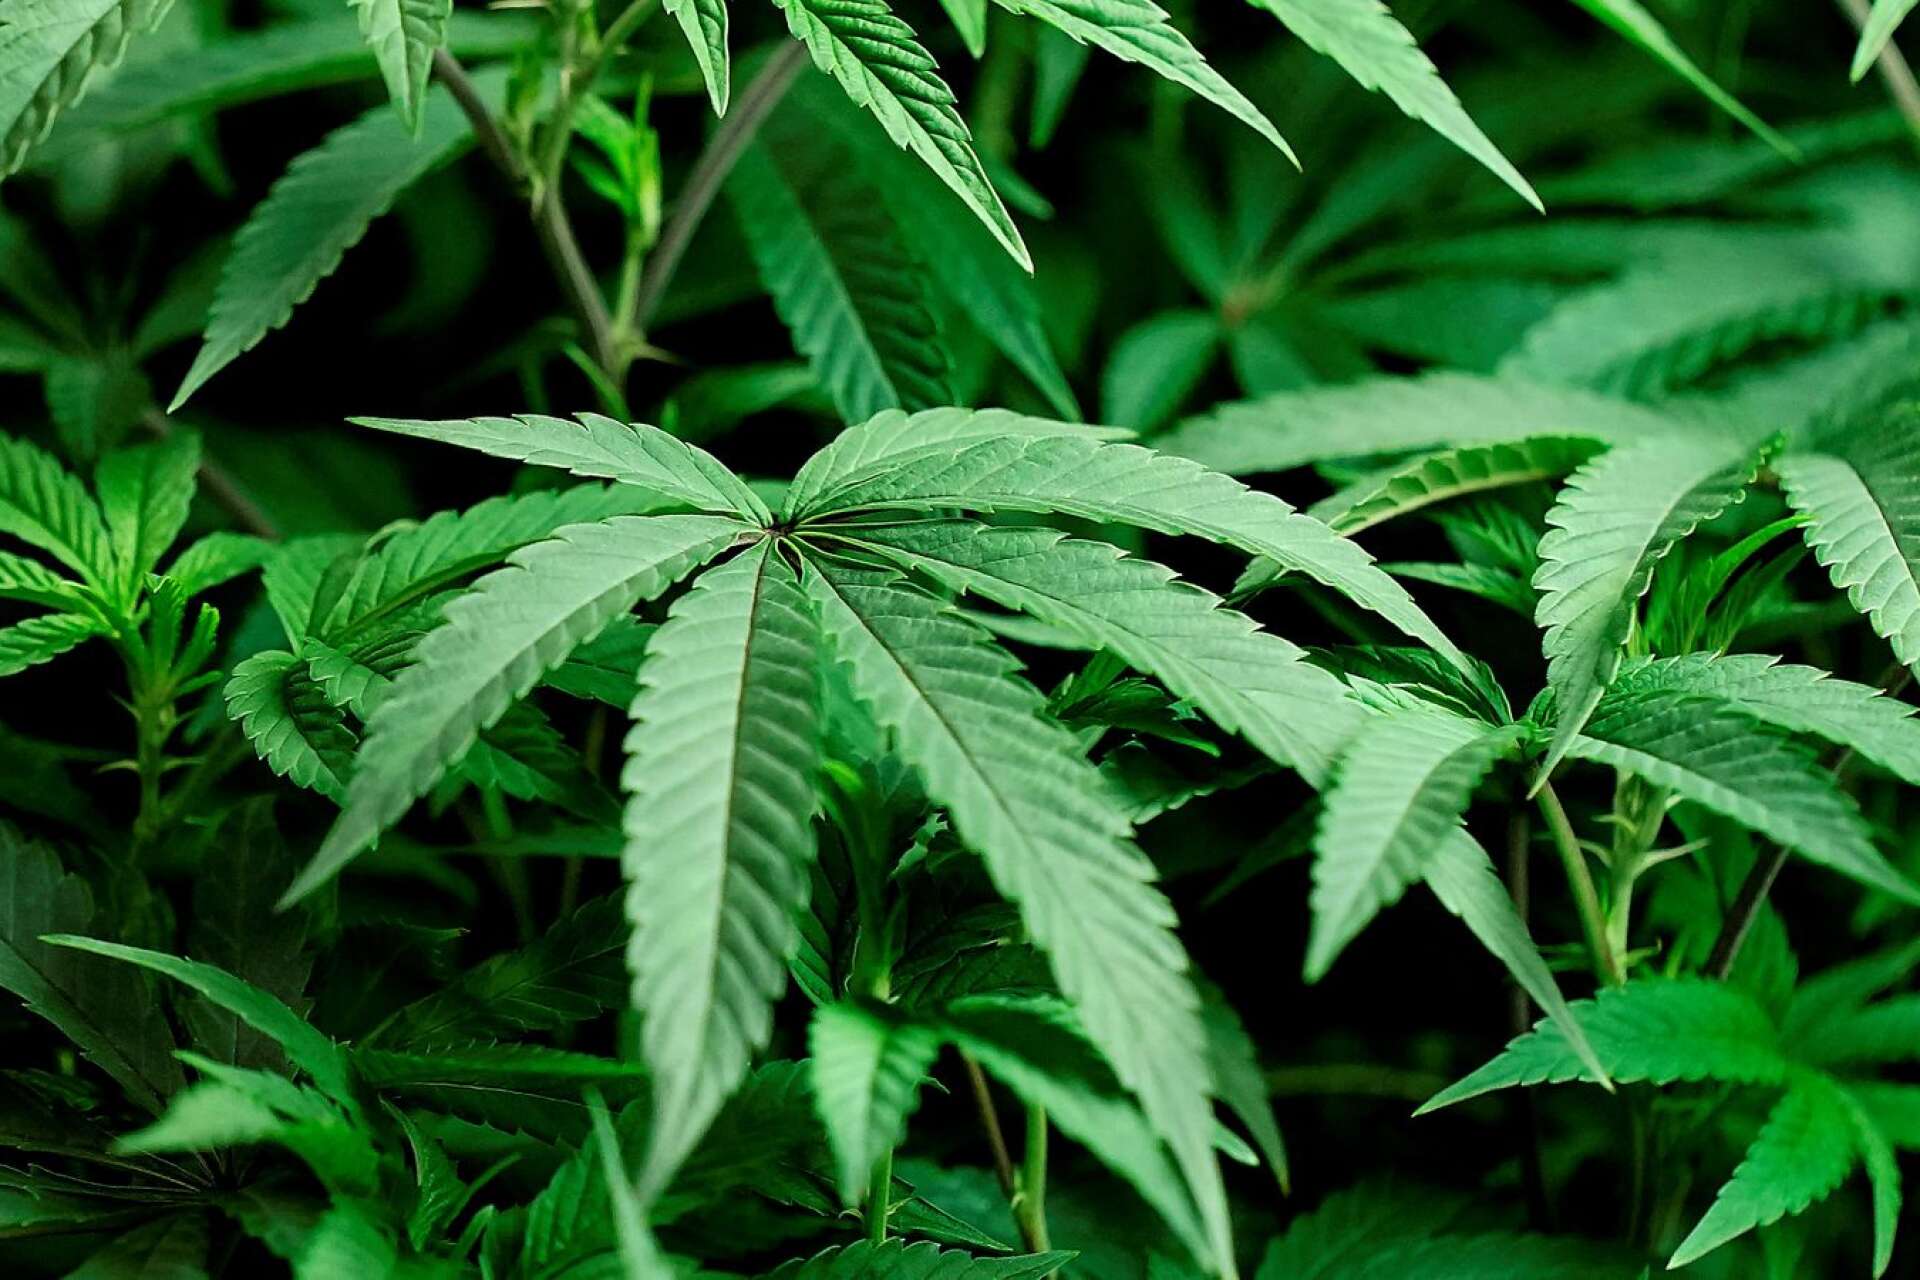  En av de två männen som i somras dömdes för grovt narkotikabrott efter att en cannabisodling avslöjades i Melleruds kommun har fått sitt fängelsestraff förlängt.